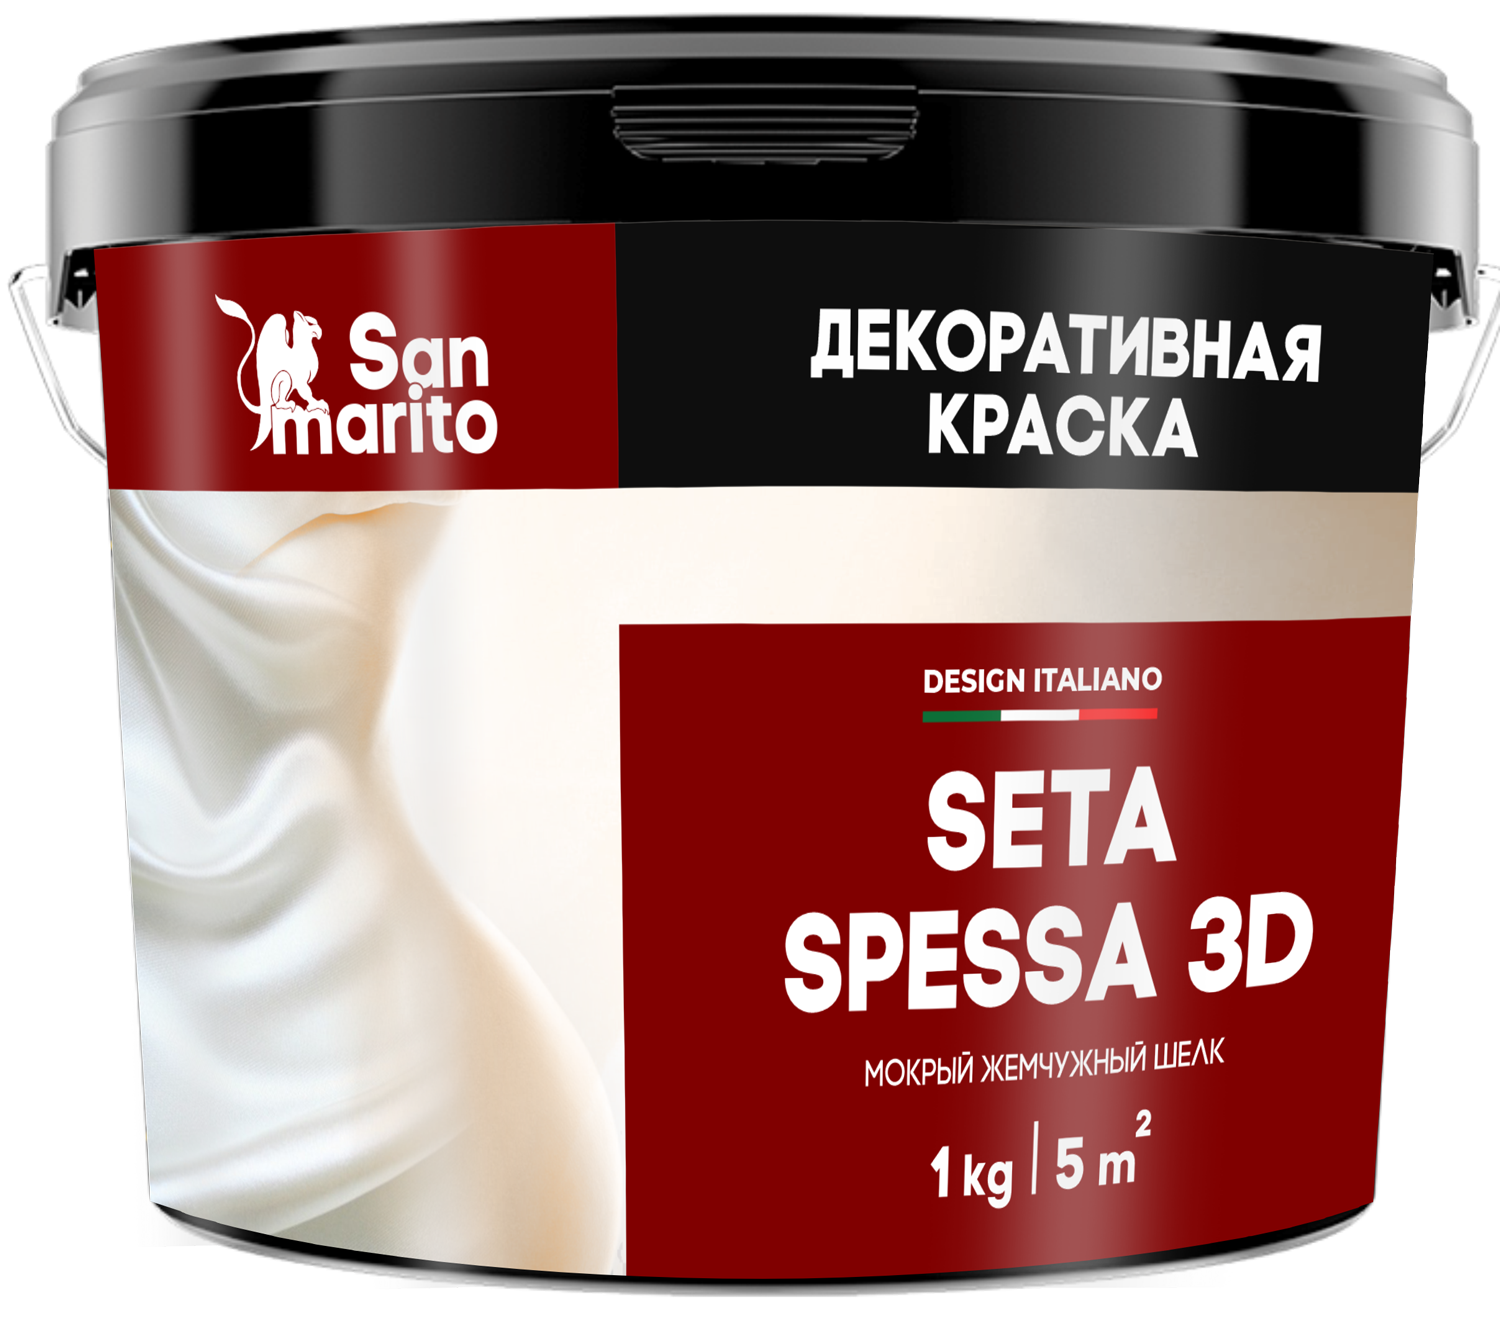 Краска декоративная с эффектом мокрого жемчужного шелка "San Marito Seta Spessa 3D" 5кг